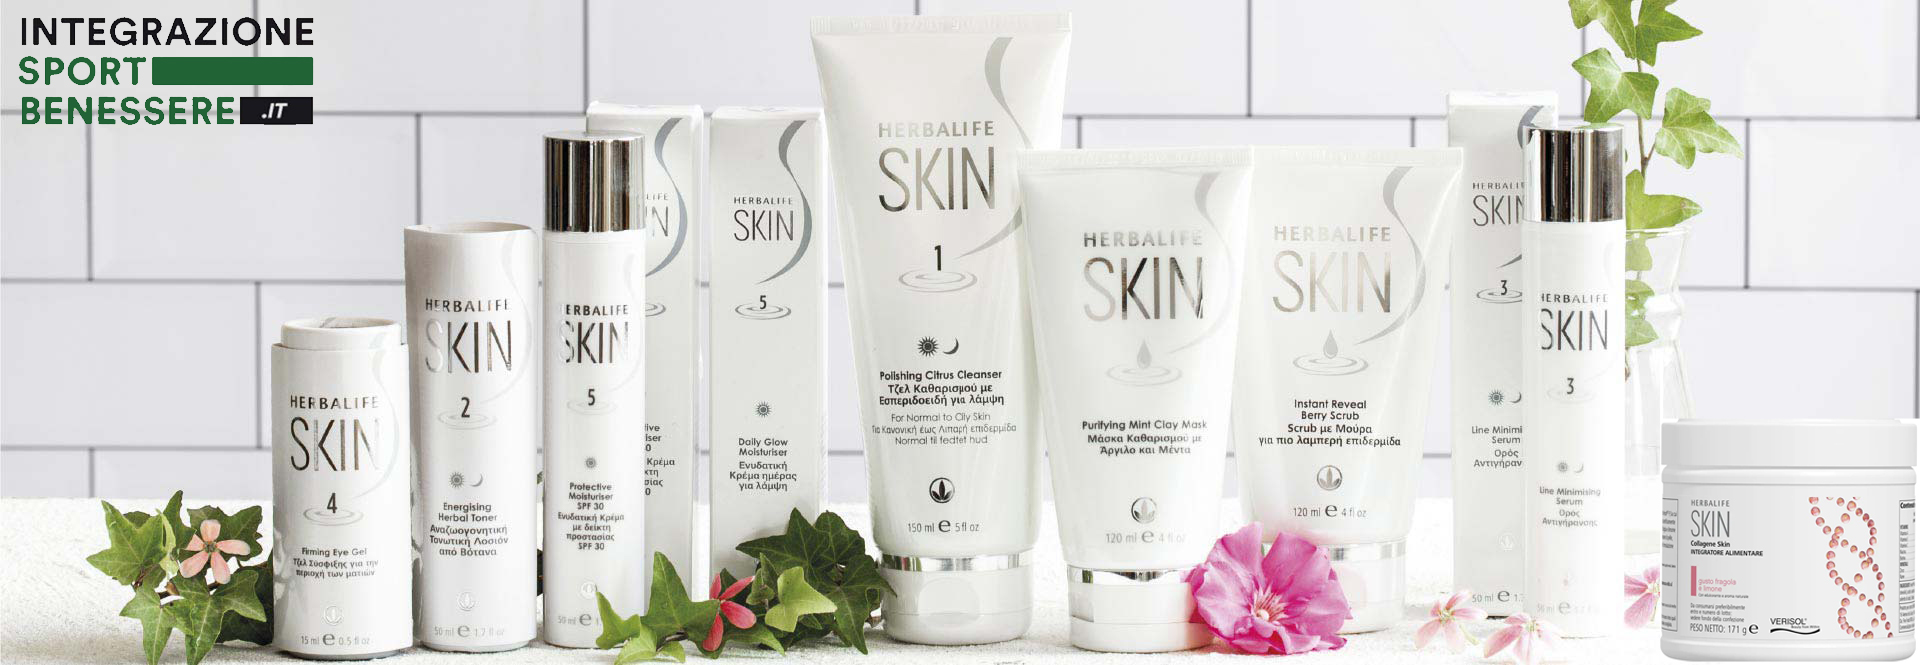 Herbalife Skin ® i prodotti per la cura della pelle e bellezza